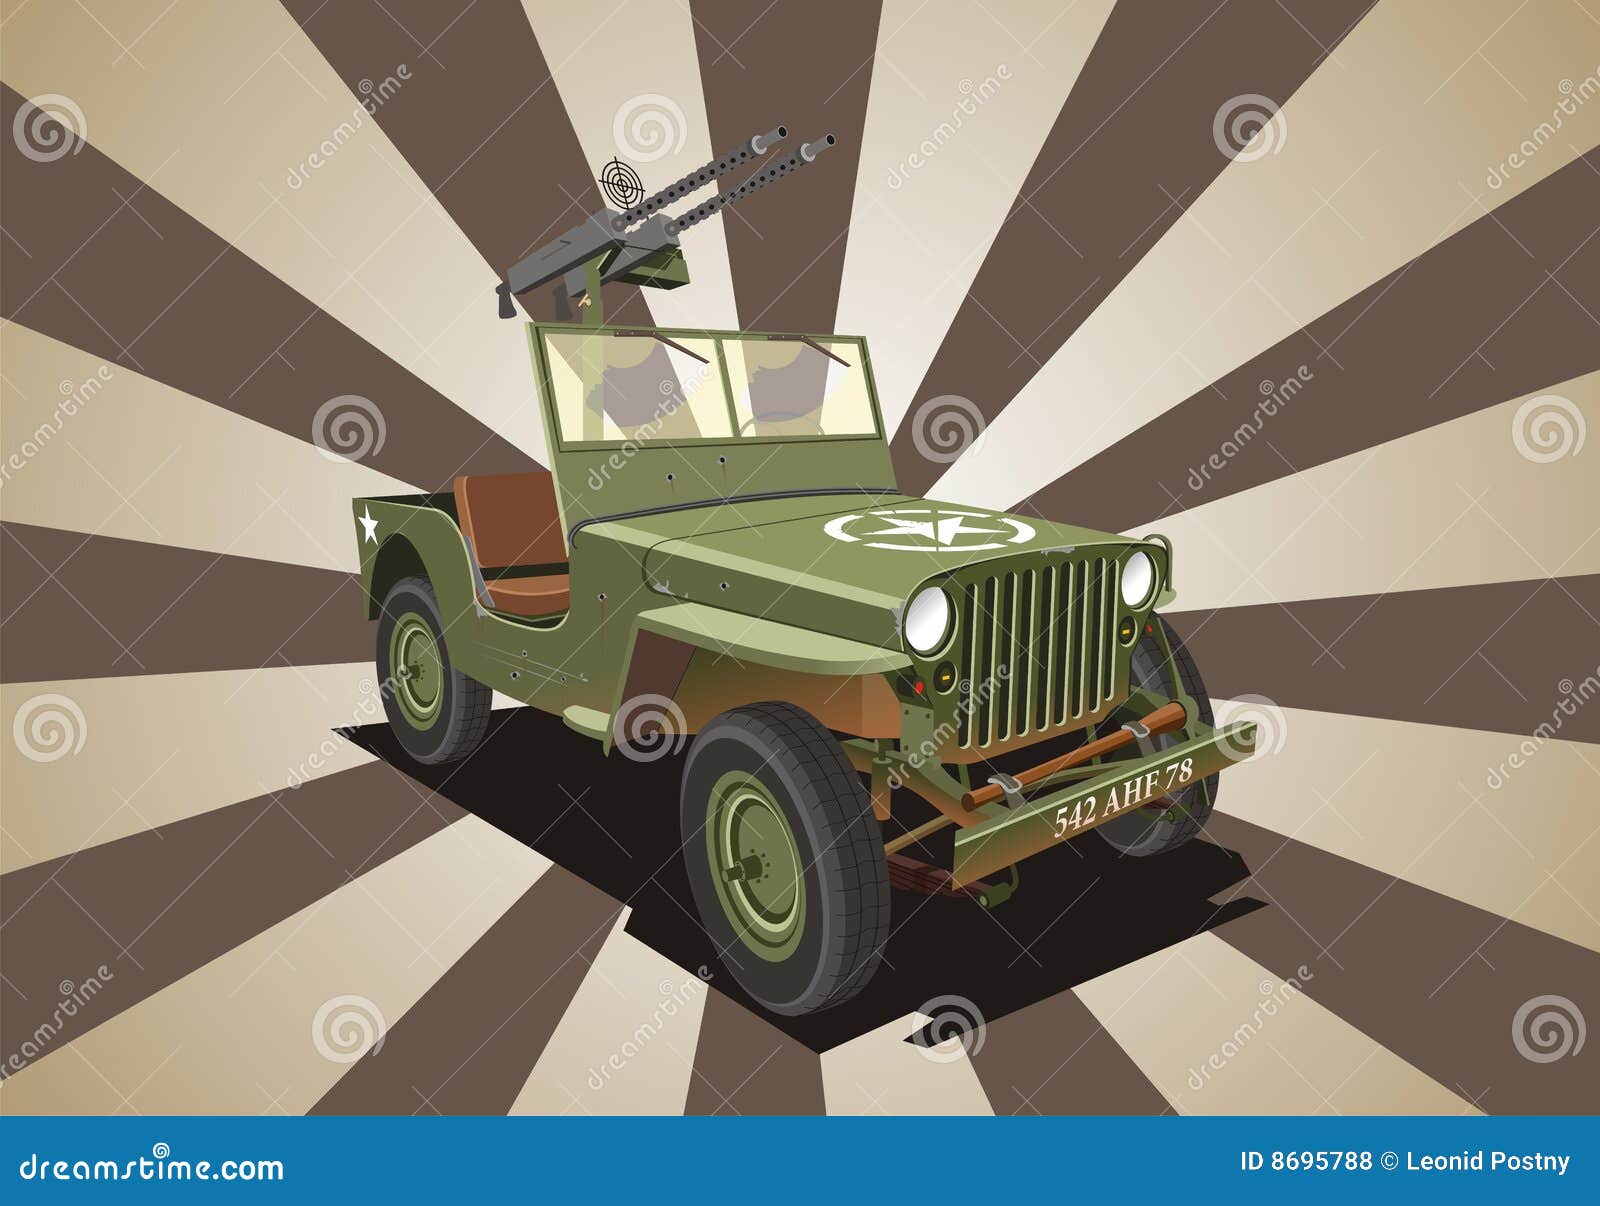 jeep willis war machine